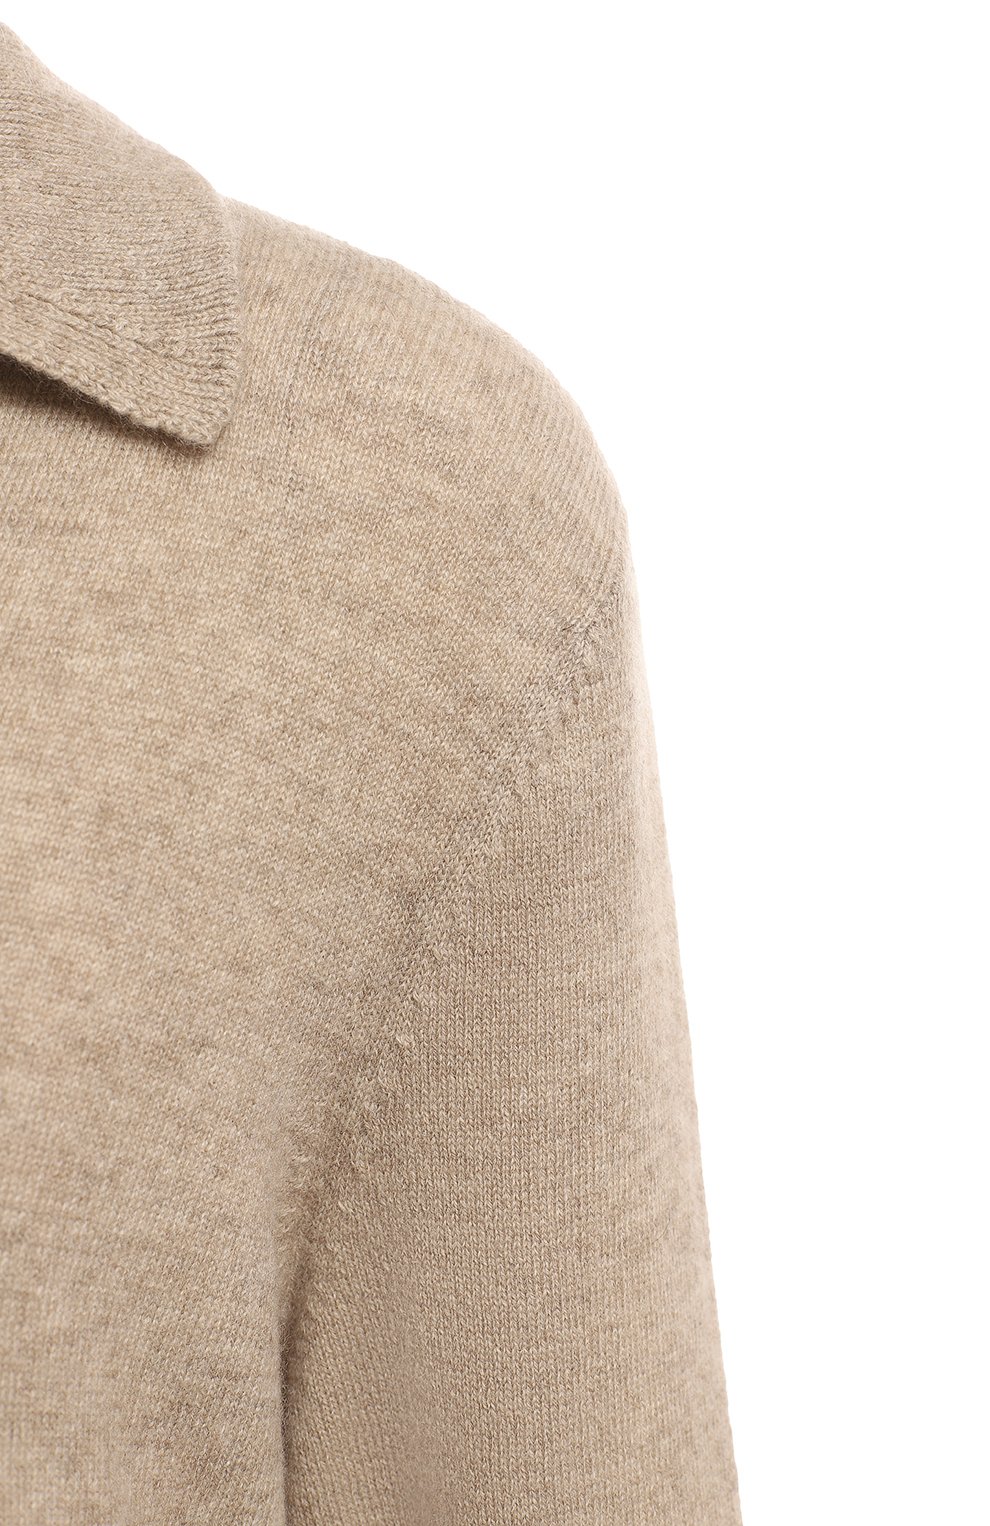 Кашемировый пуловер | FTC-Cashmere | Бежевый - 3